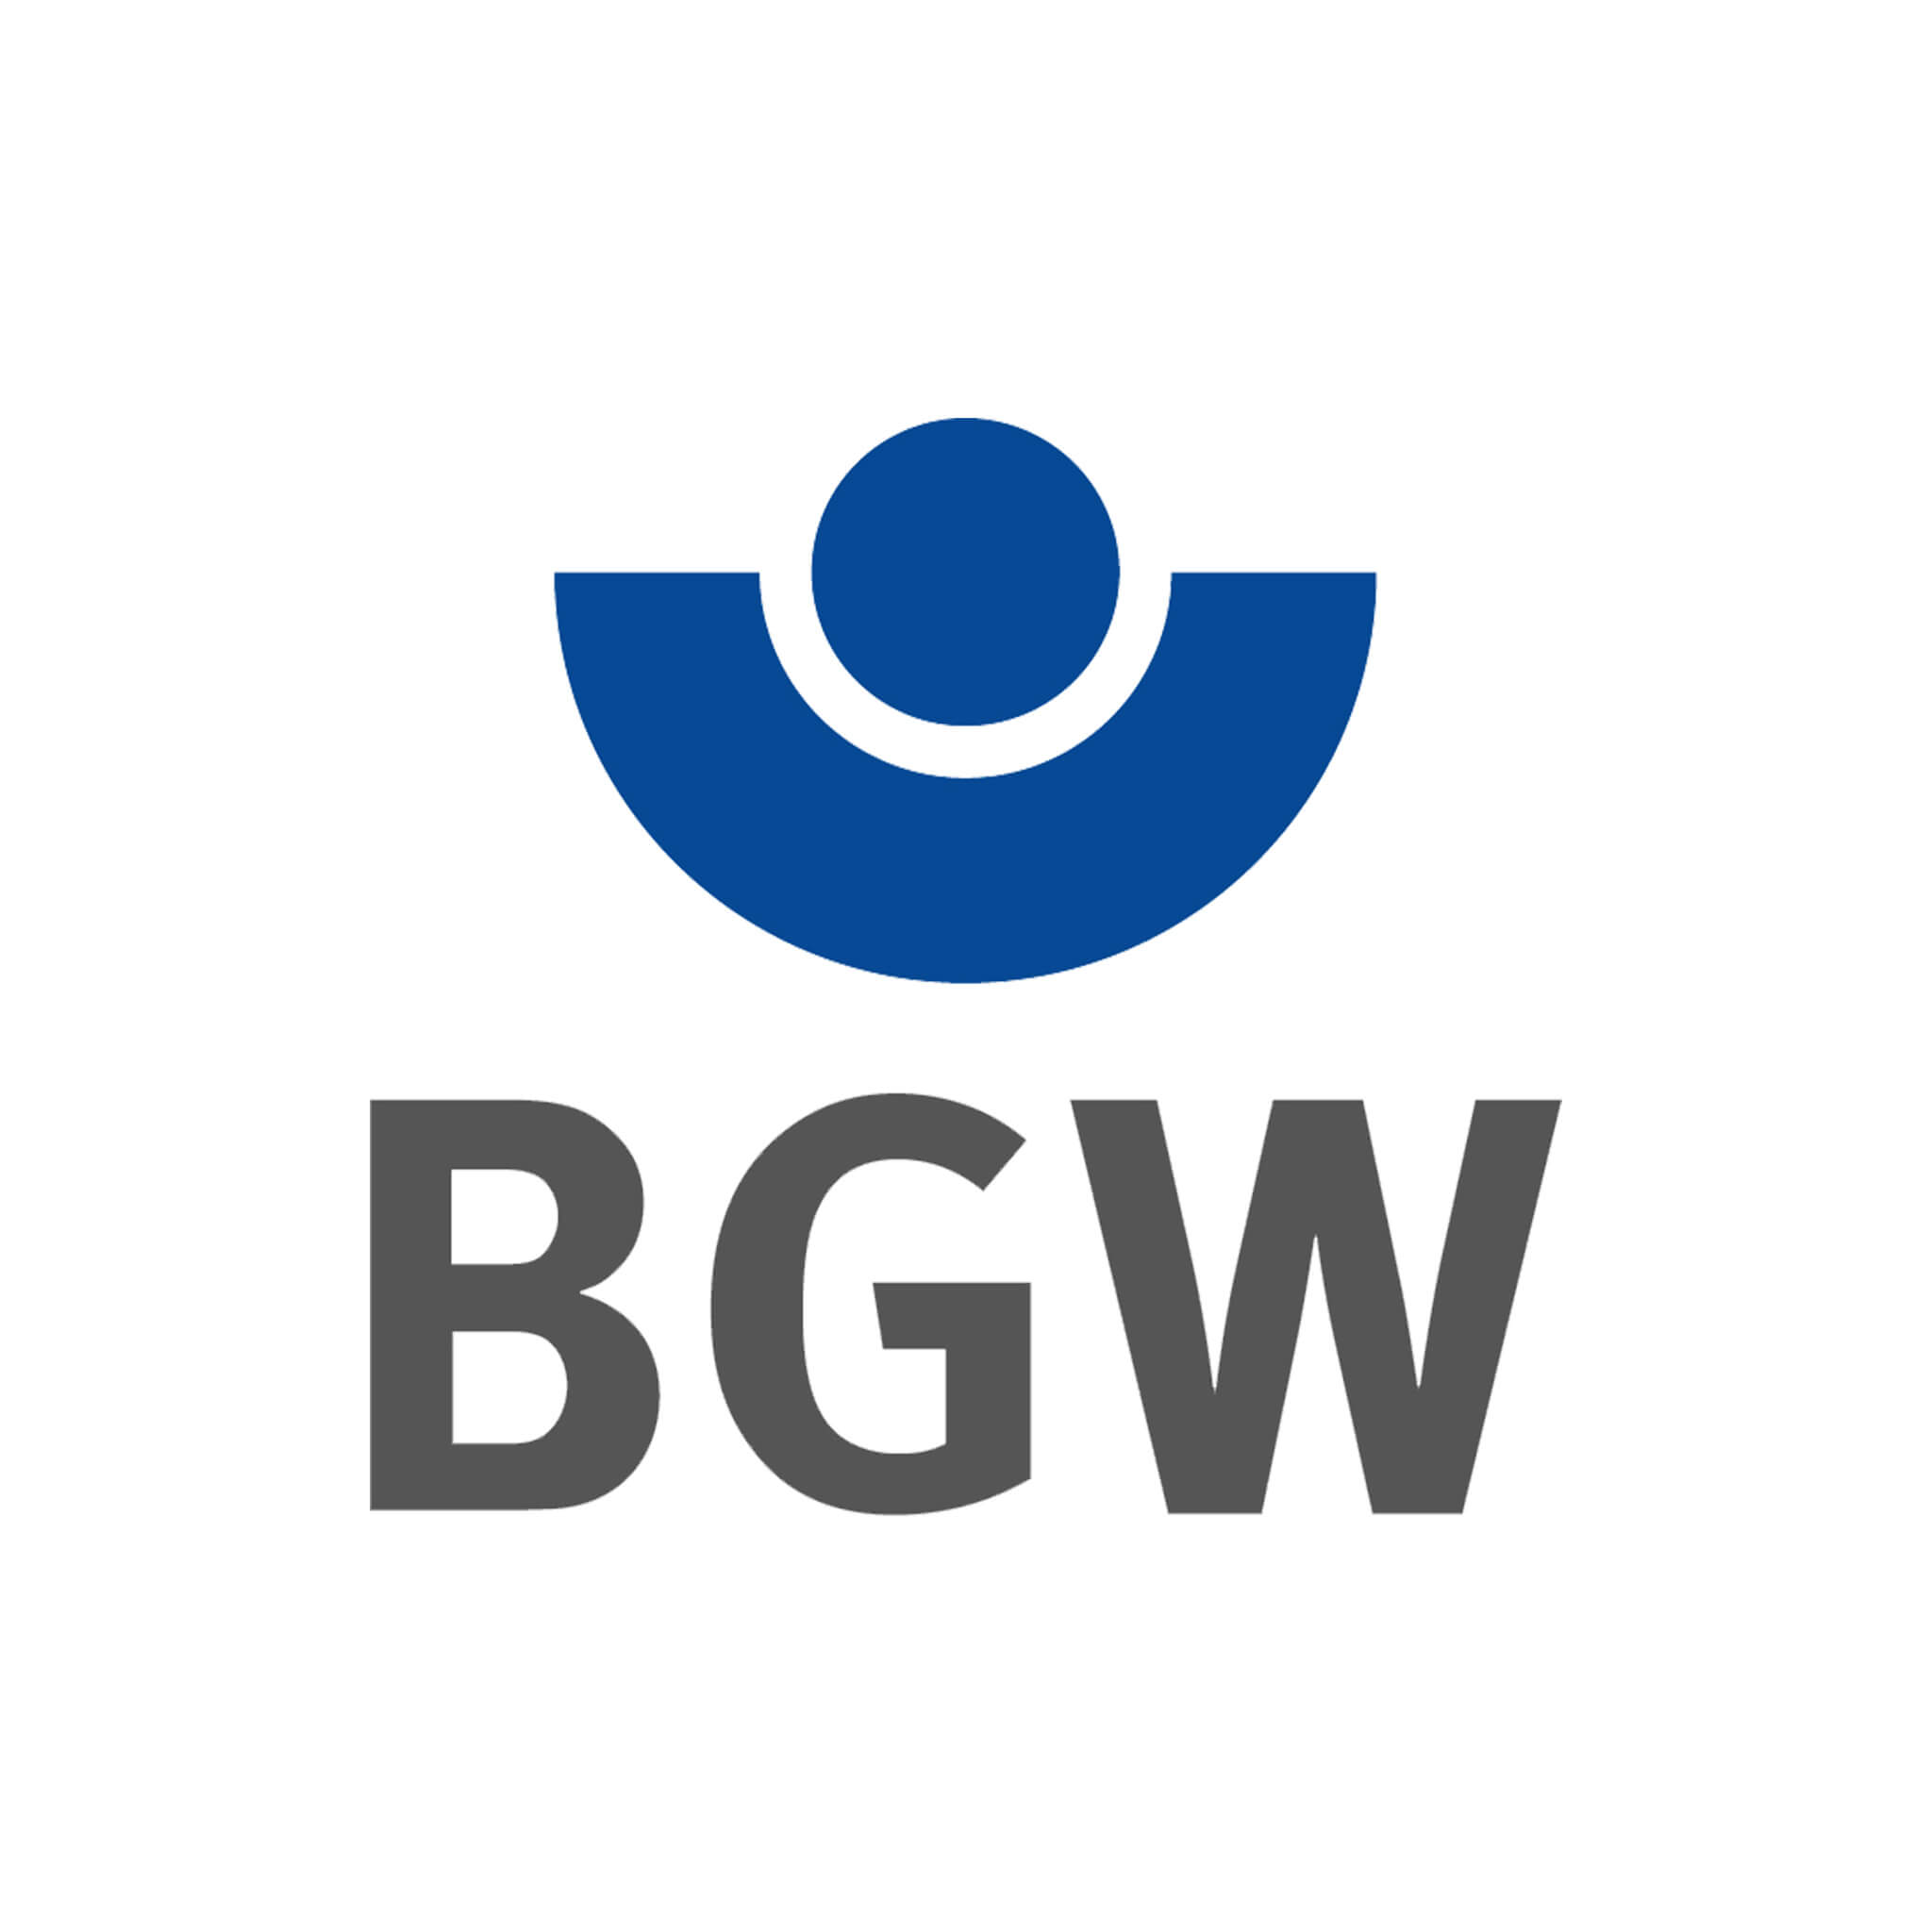 logo bgw